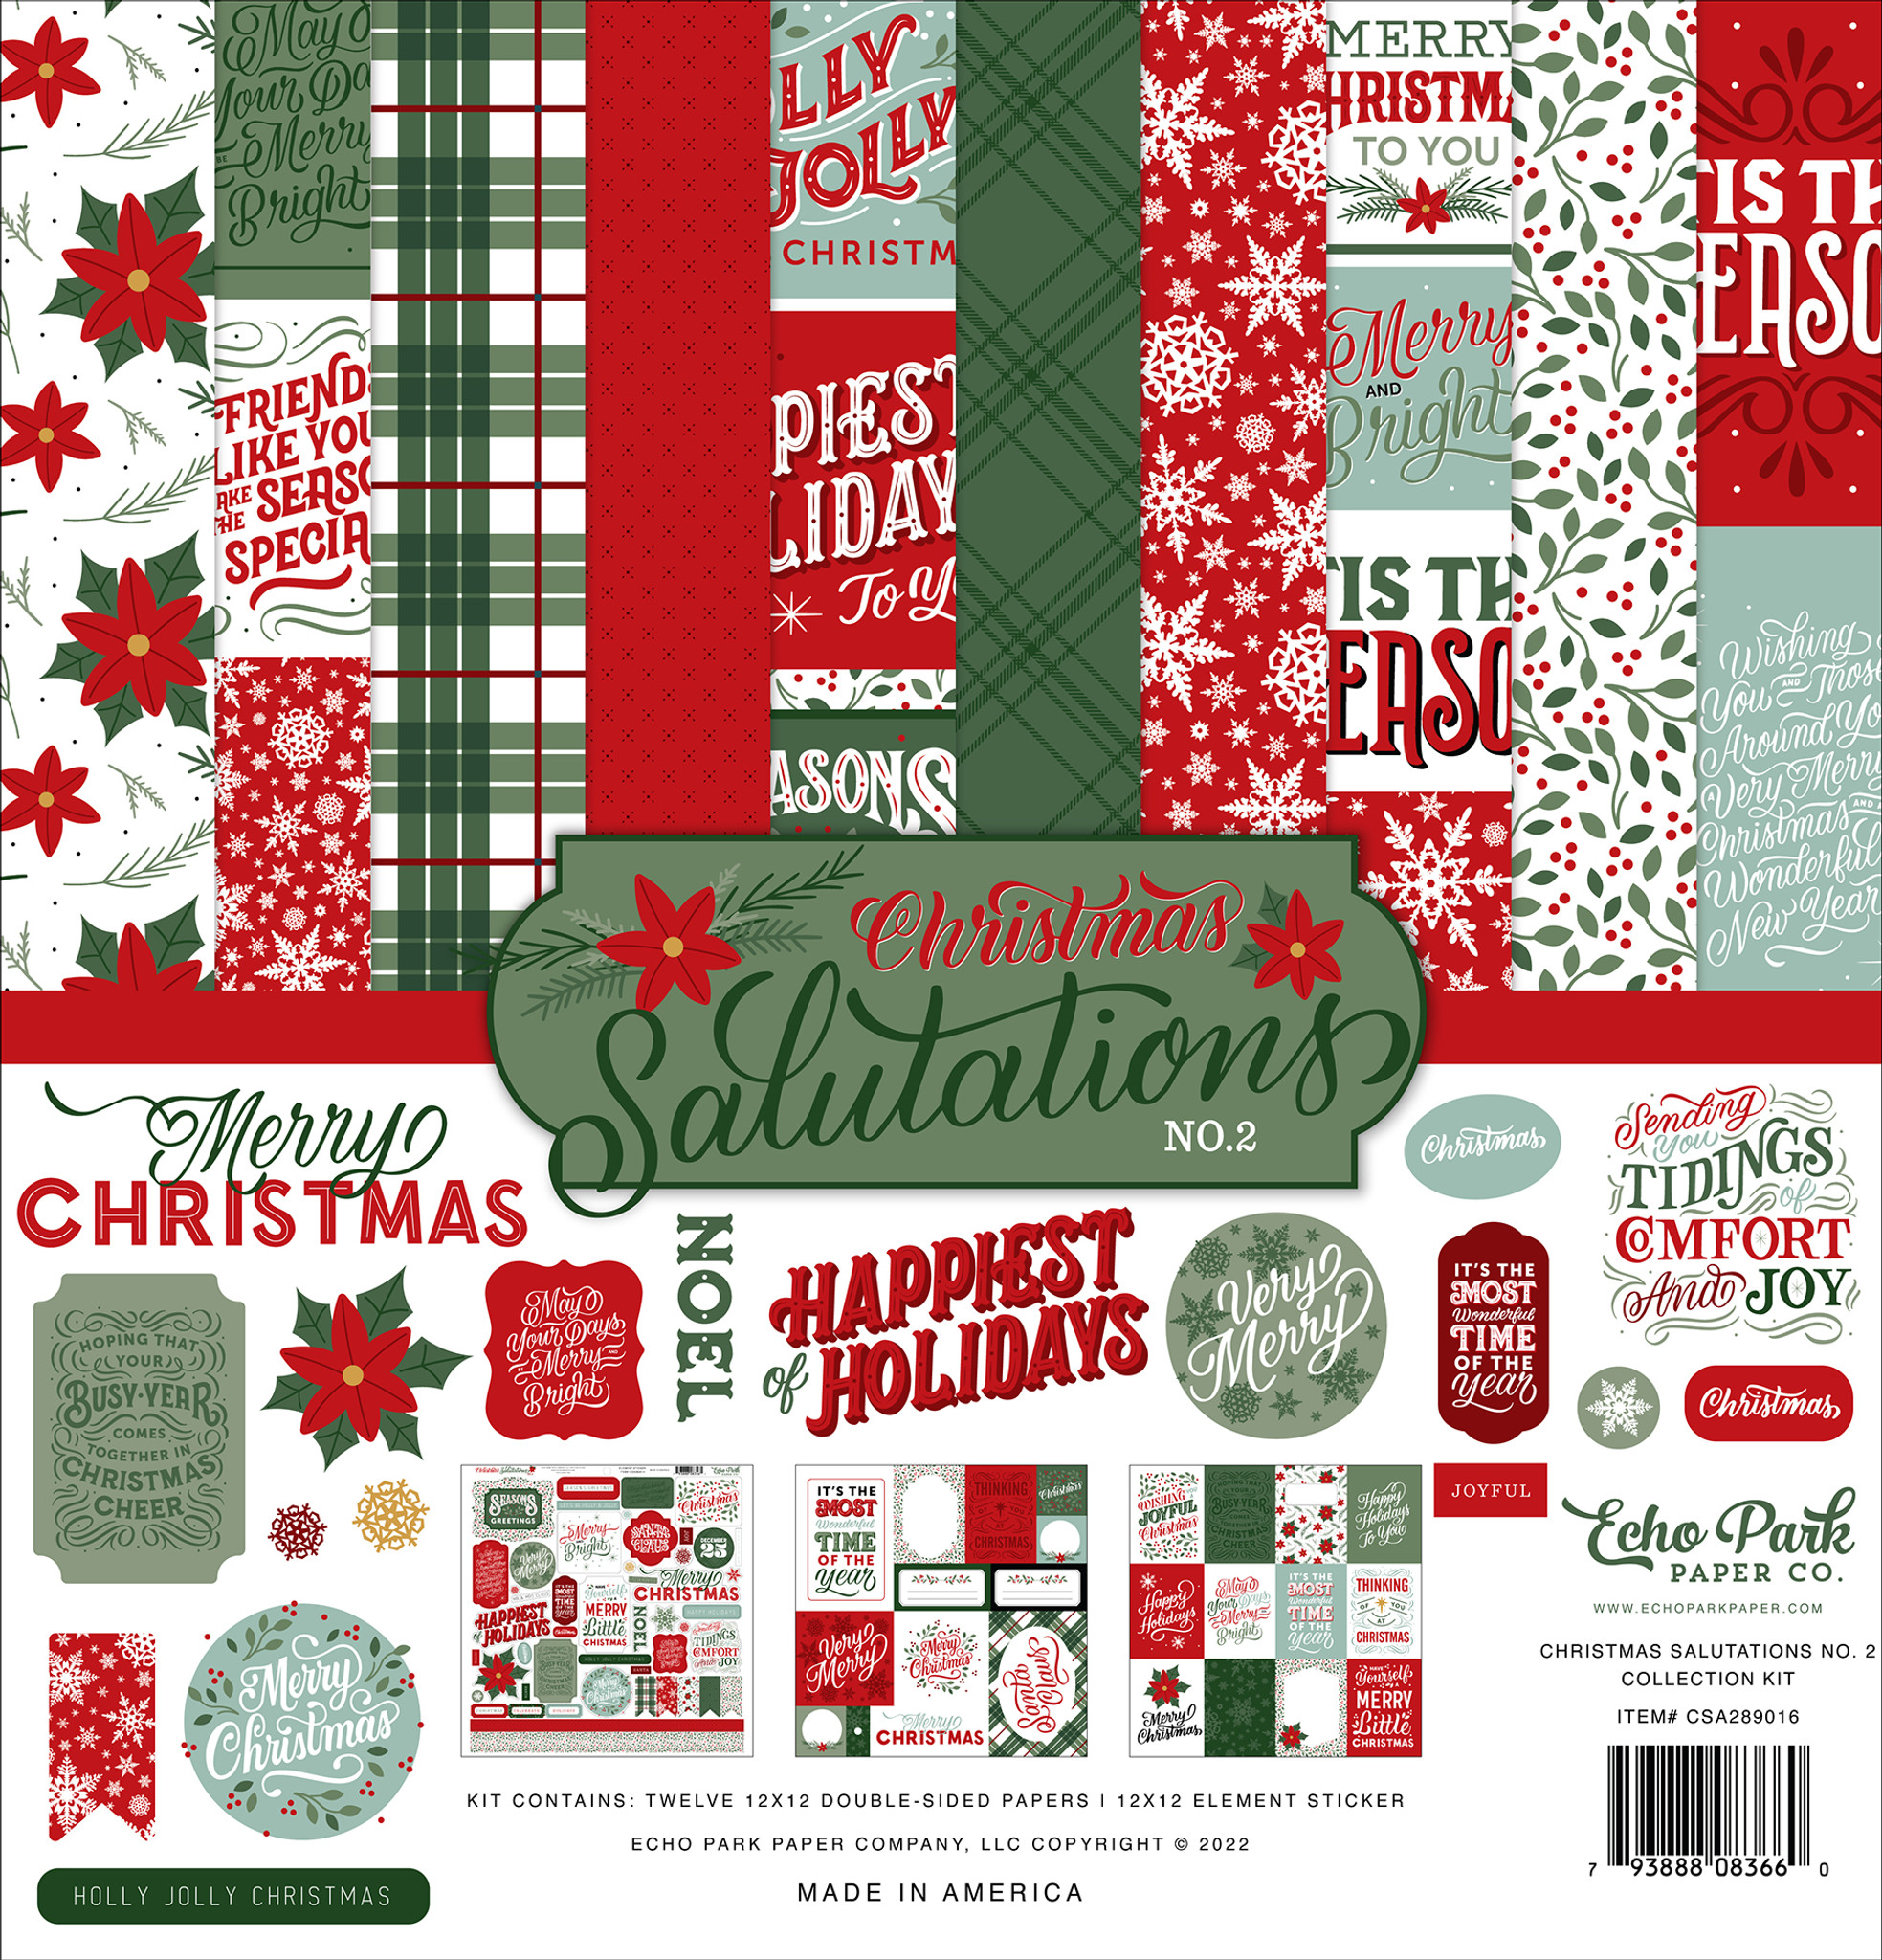 Christmas Salutations No. 2 Element Sticker - Echo Park Paper Co.